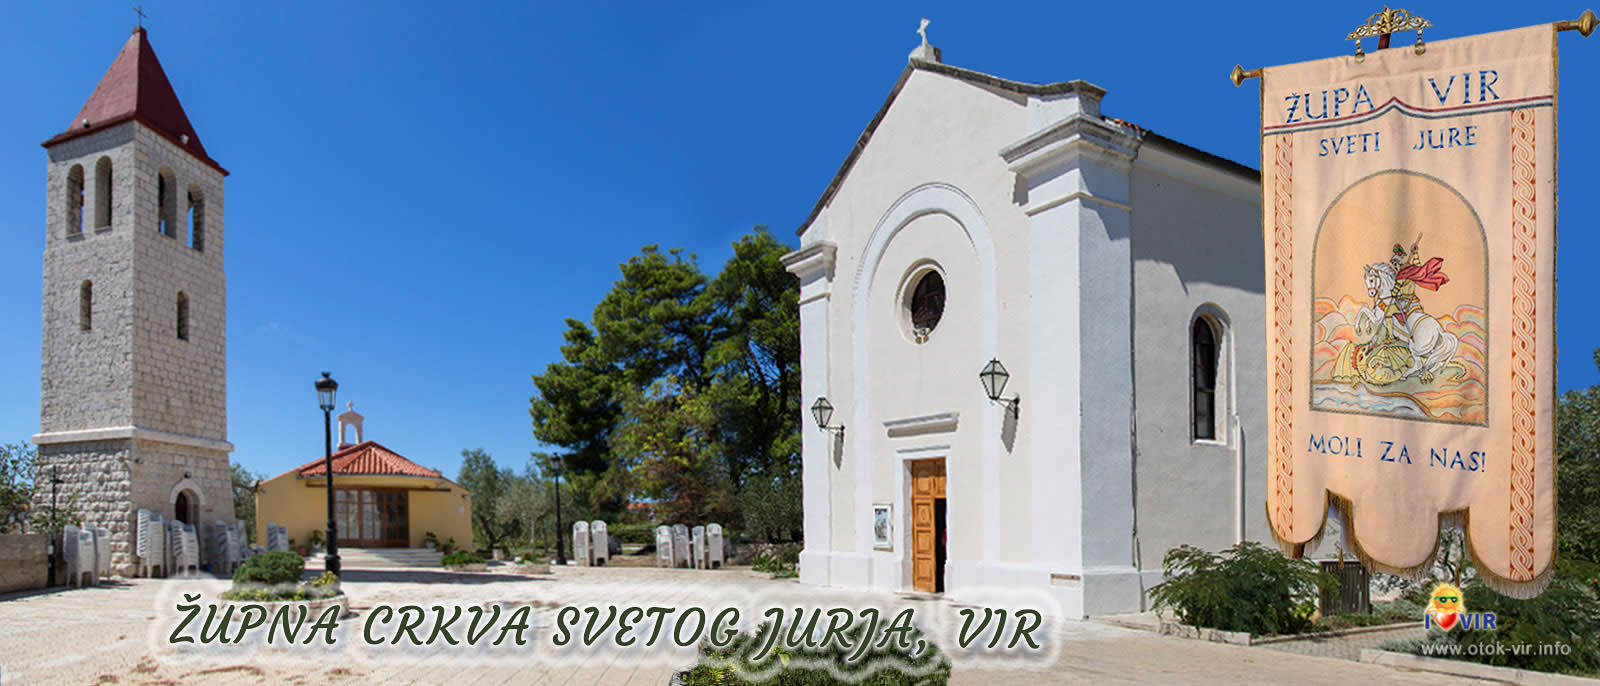 Župna crkva svetog Jurja Vir